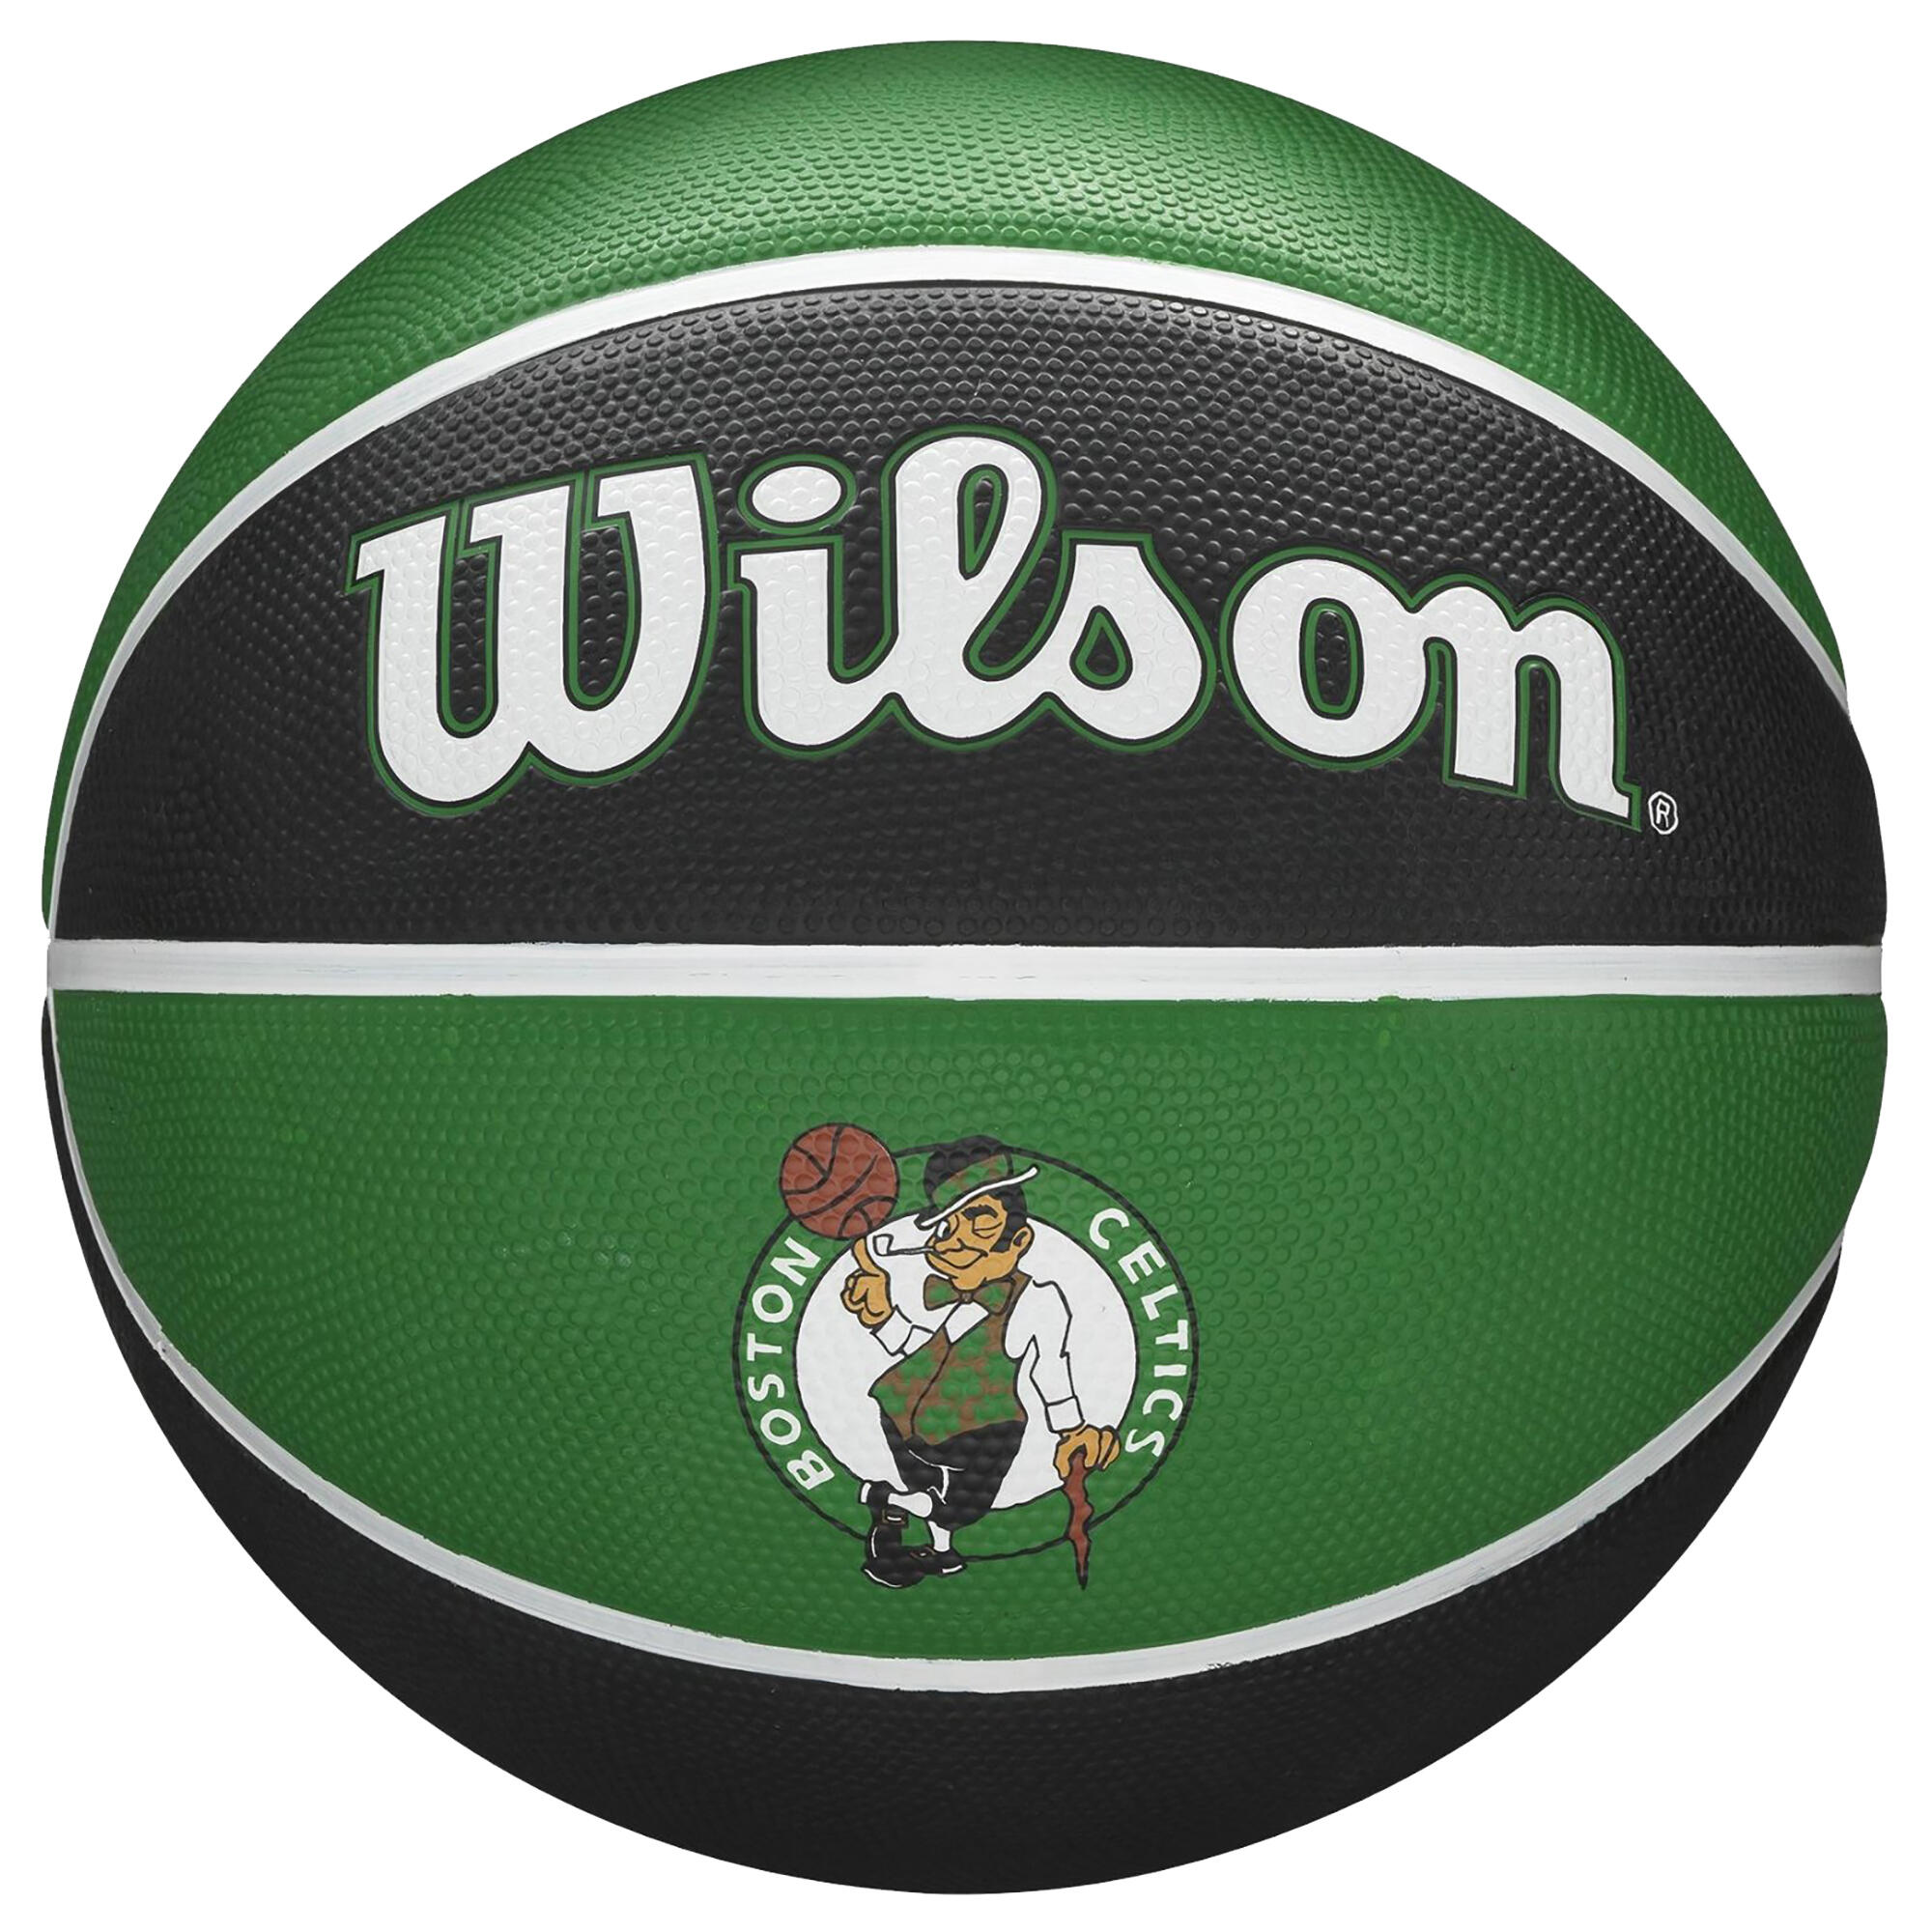 Minge Baschet Replică Team Tribute Celtics NBA Mărimea 7 La Oferta Online decathlon imagine La Oferta Online